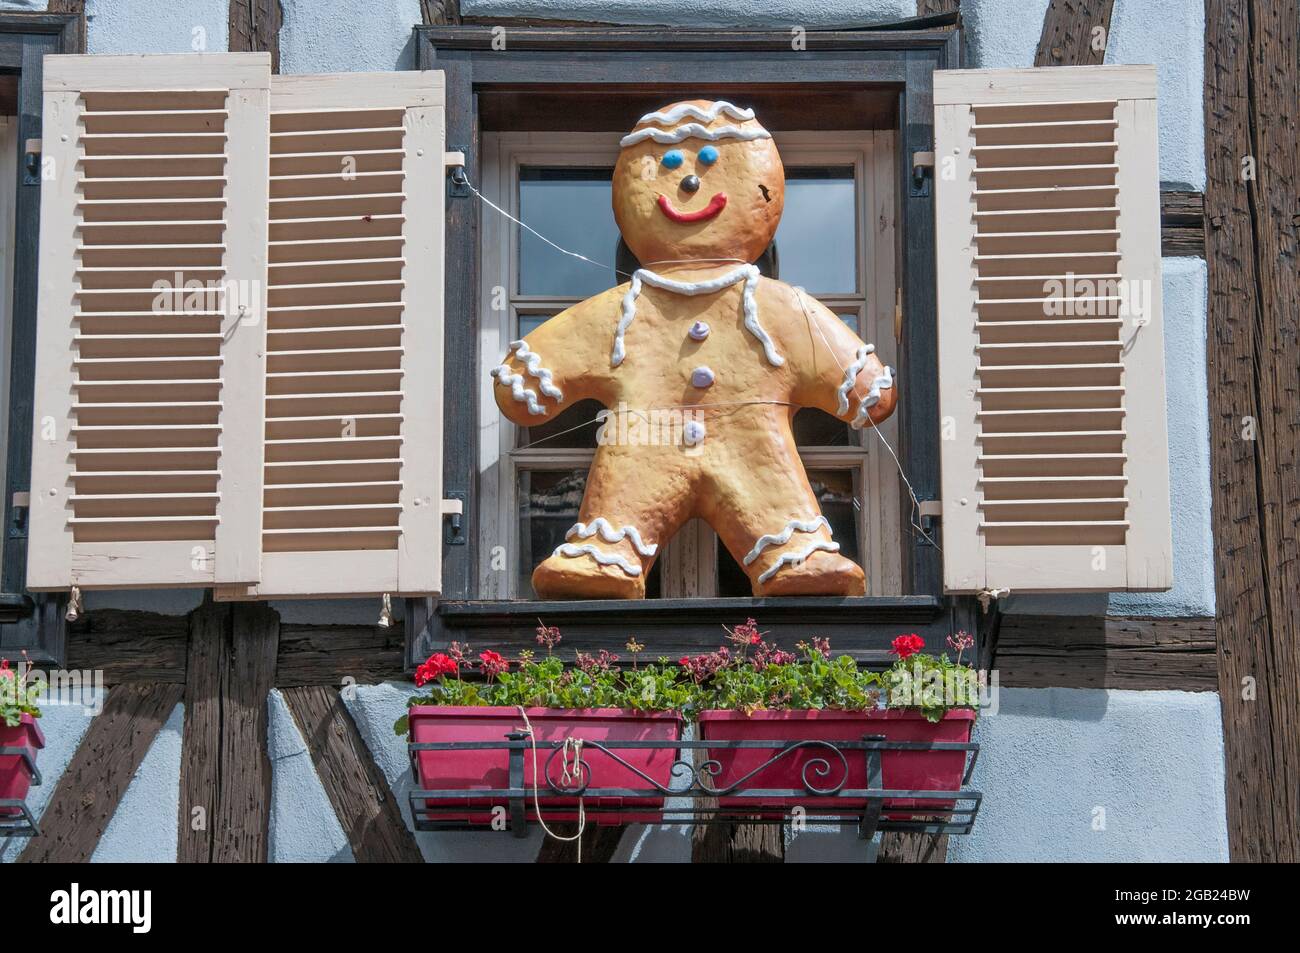 Una scultura di un uomo di pan di zenzero, simile a un bambino, adorna la finestra di una casa a graticcio a Kaysersberg, una città sulla strada del vino dell'Alsazia, nella Francia orientale Foto Stock